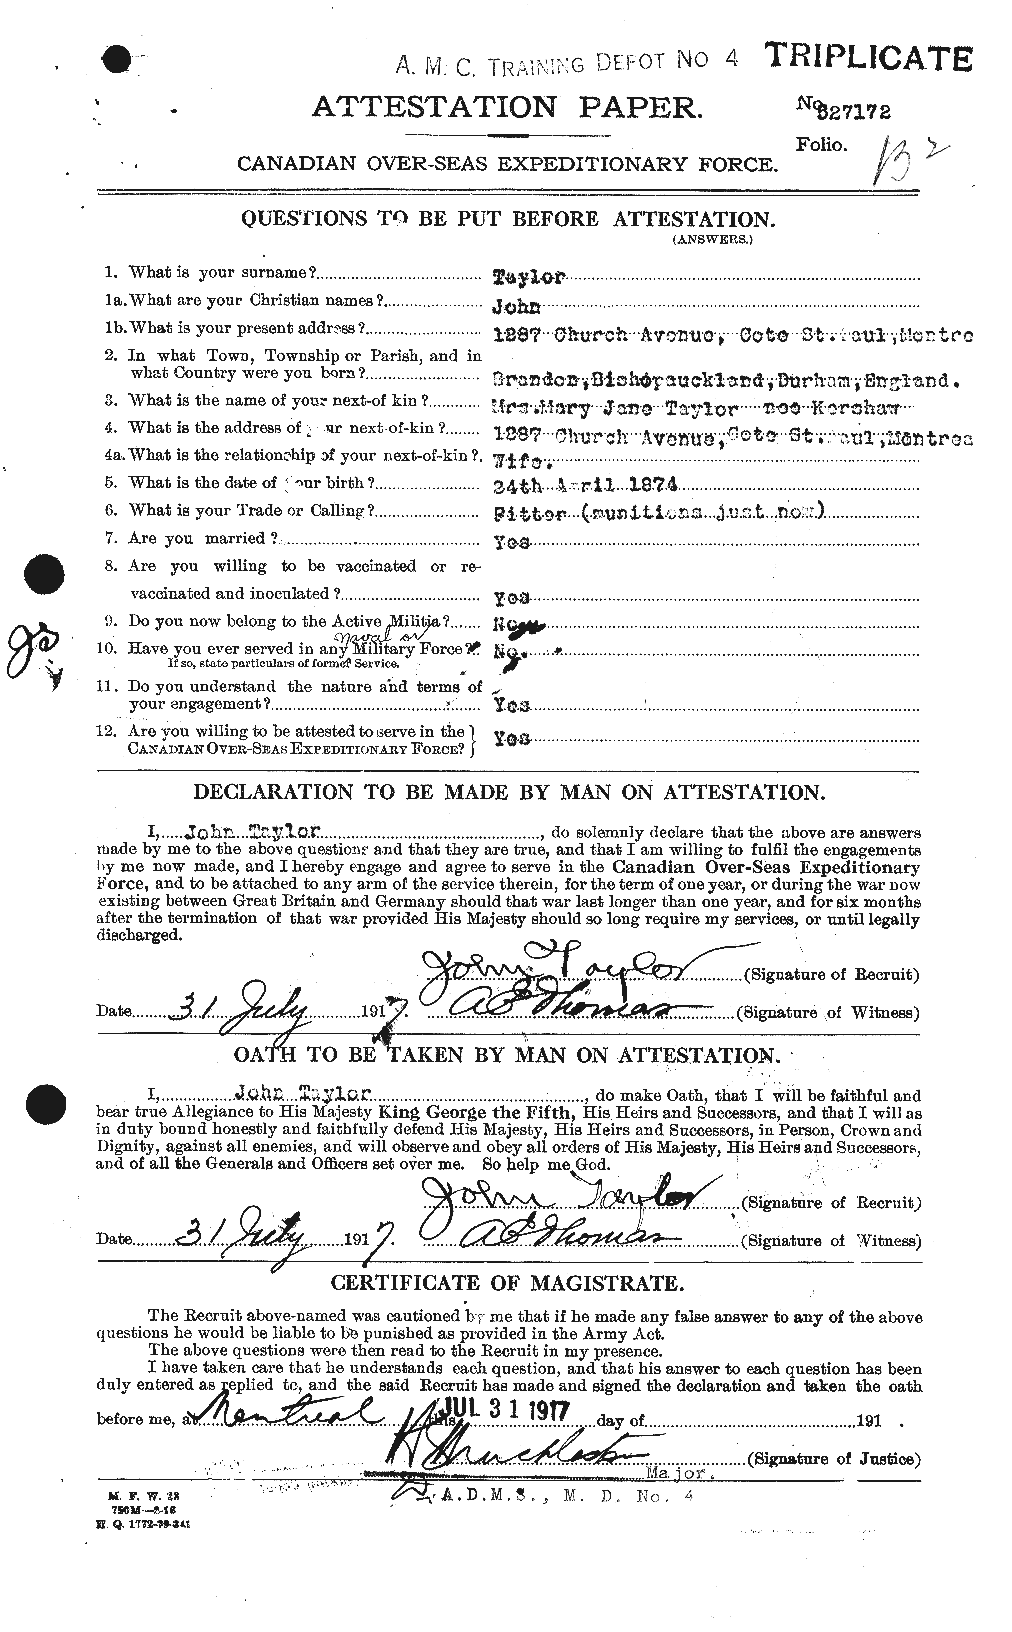 Dossiers du Personnel de la Première Guerre mondiale - CEC 627004a